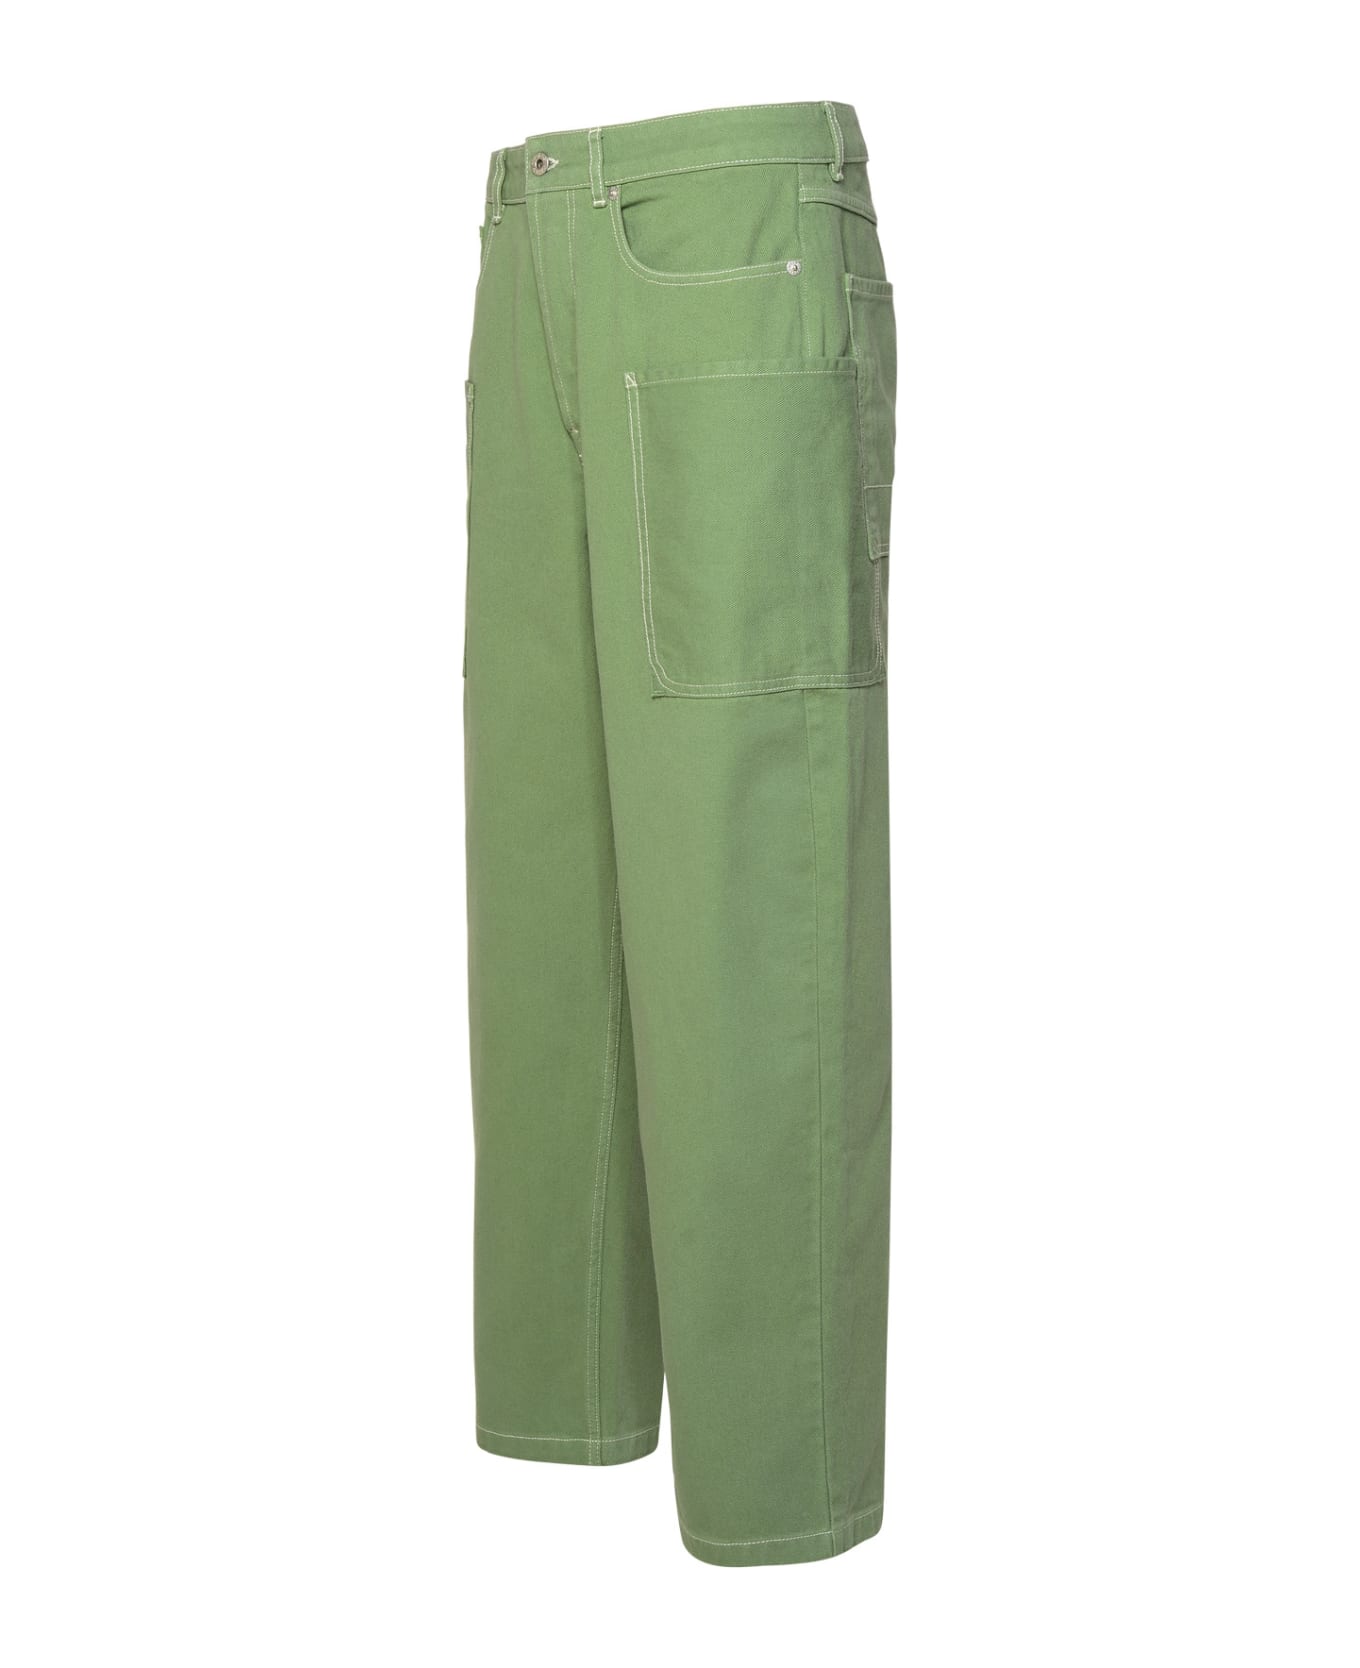 Kenzo Cotton Pants - Green